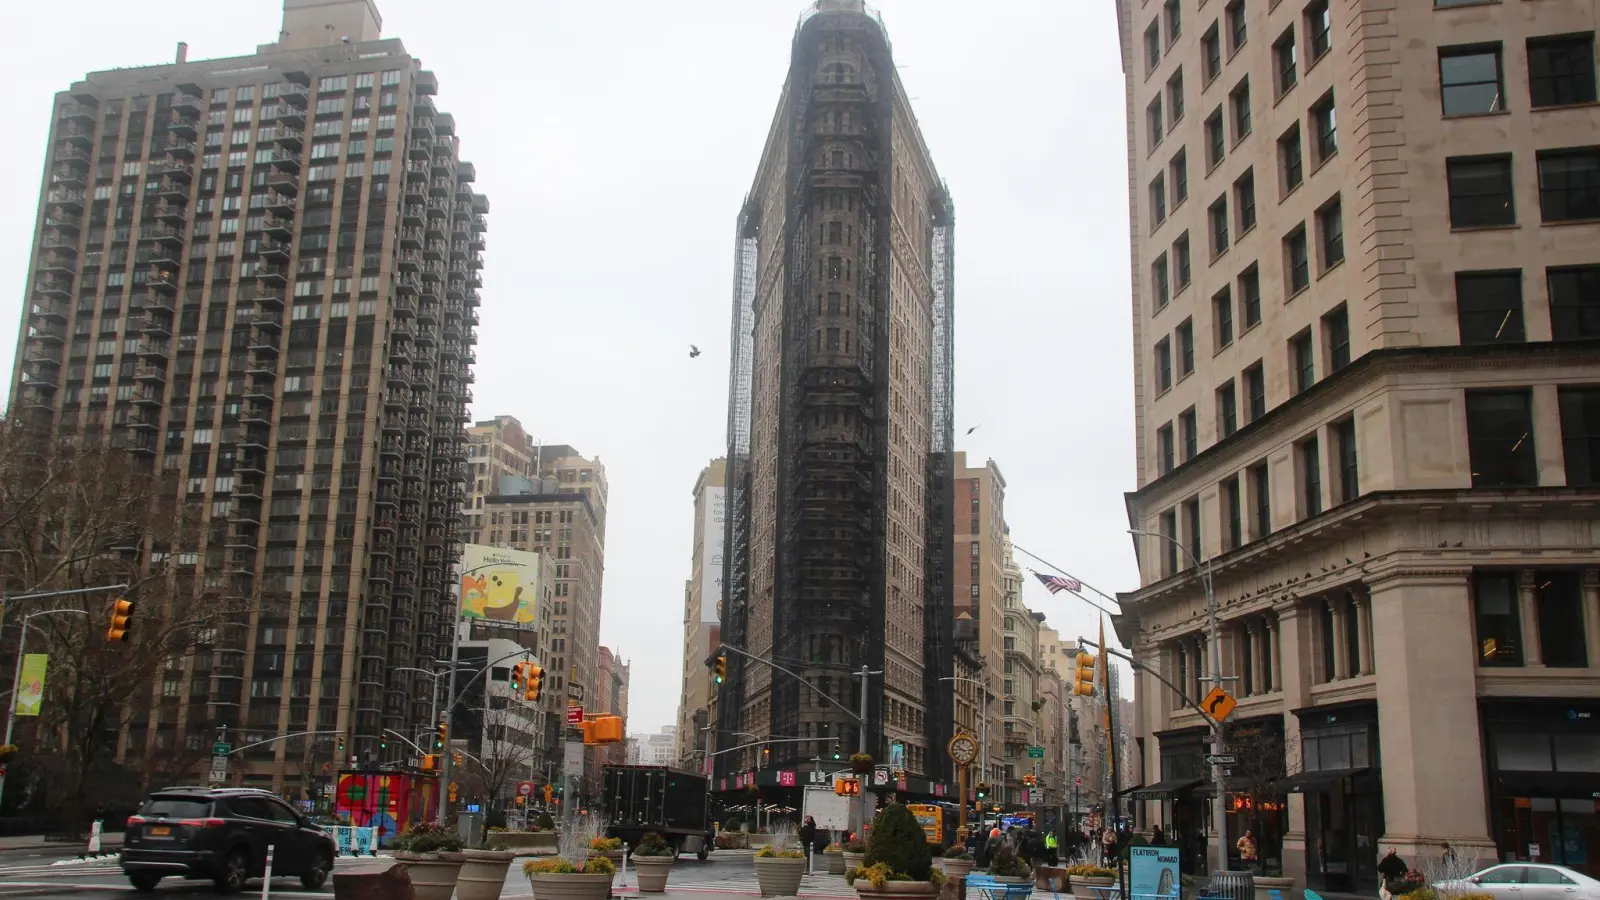 Das teilweise eingerüstete Flatiron Building in dem nach ihm benannten Flatiron District von Manhattan. (Foto: Christina Horsten/dpa)